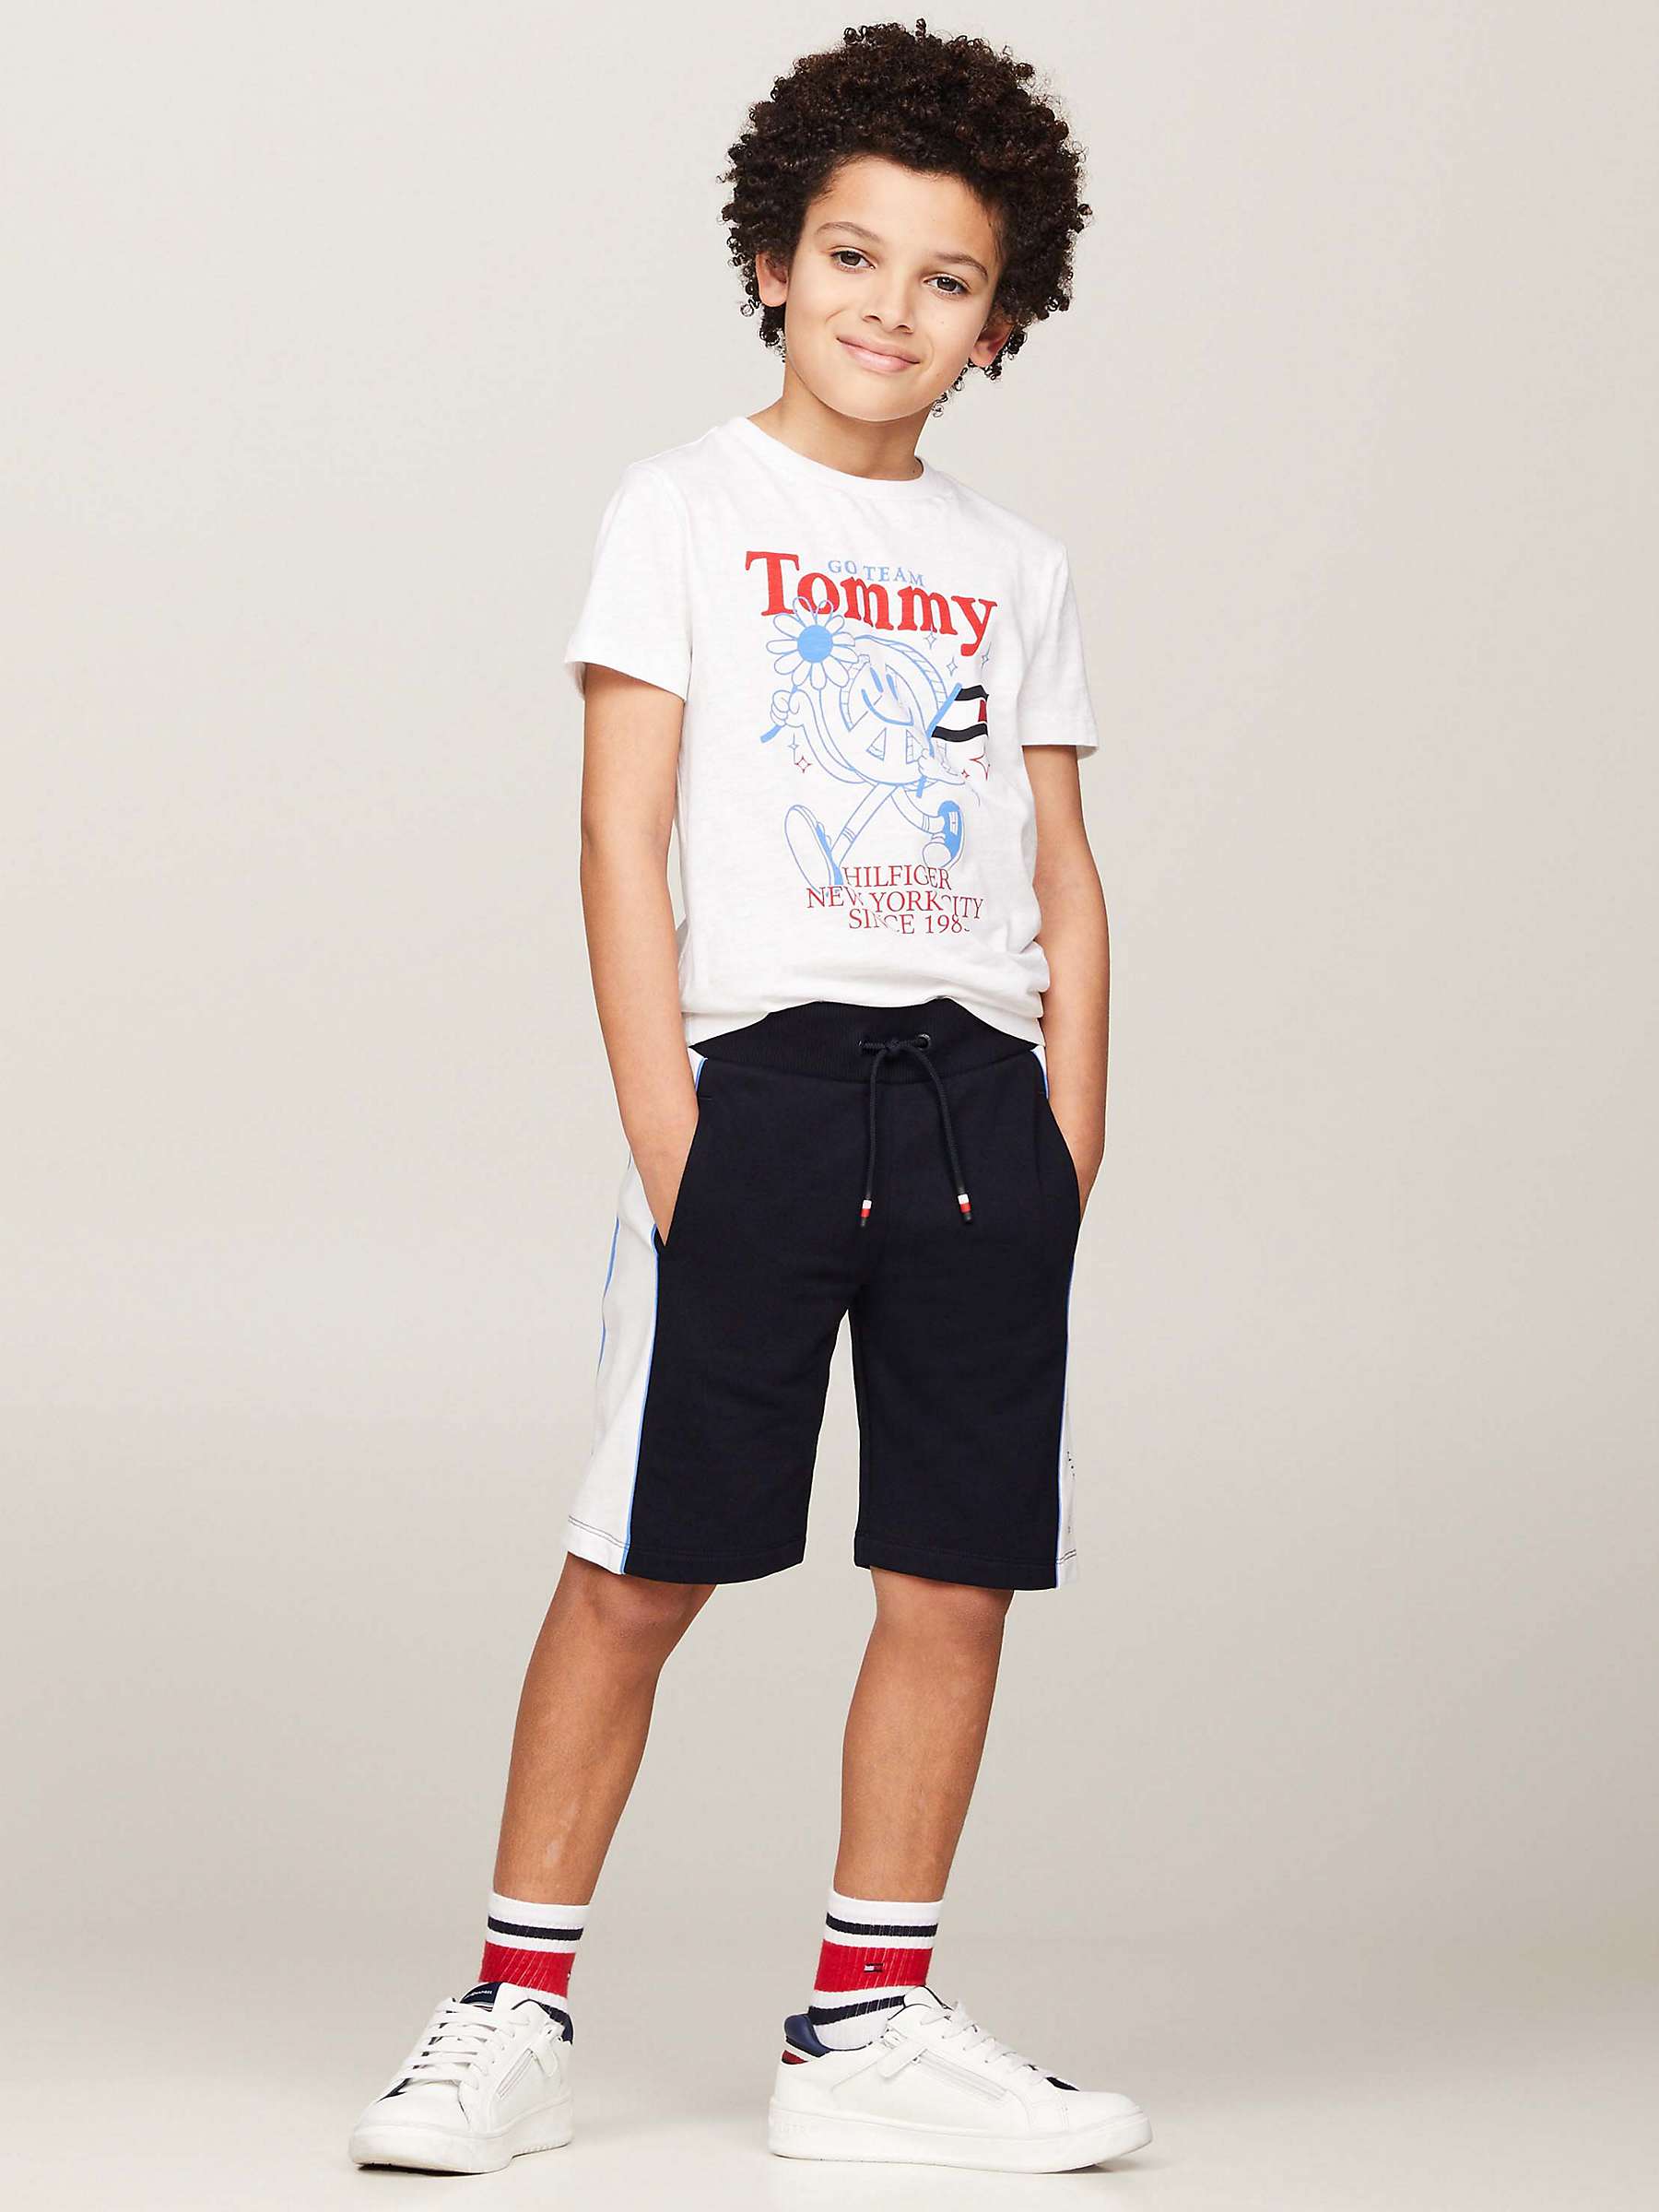 Buy Tommy Hilfiger Kids' Go Team Tommy T-Shirt & Shorts Set, Blue Spell/Multi Online at johnlewis.com